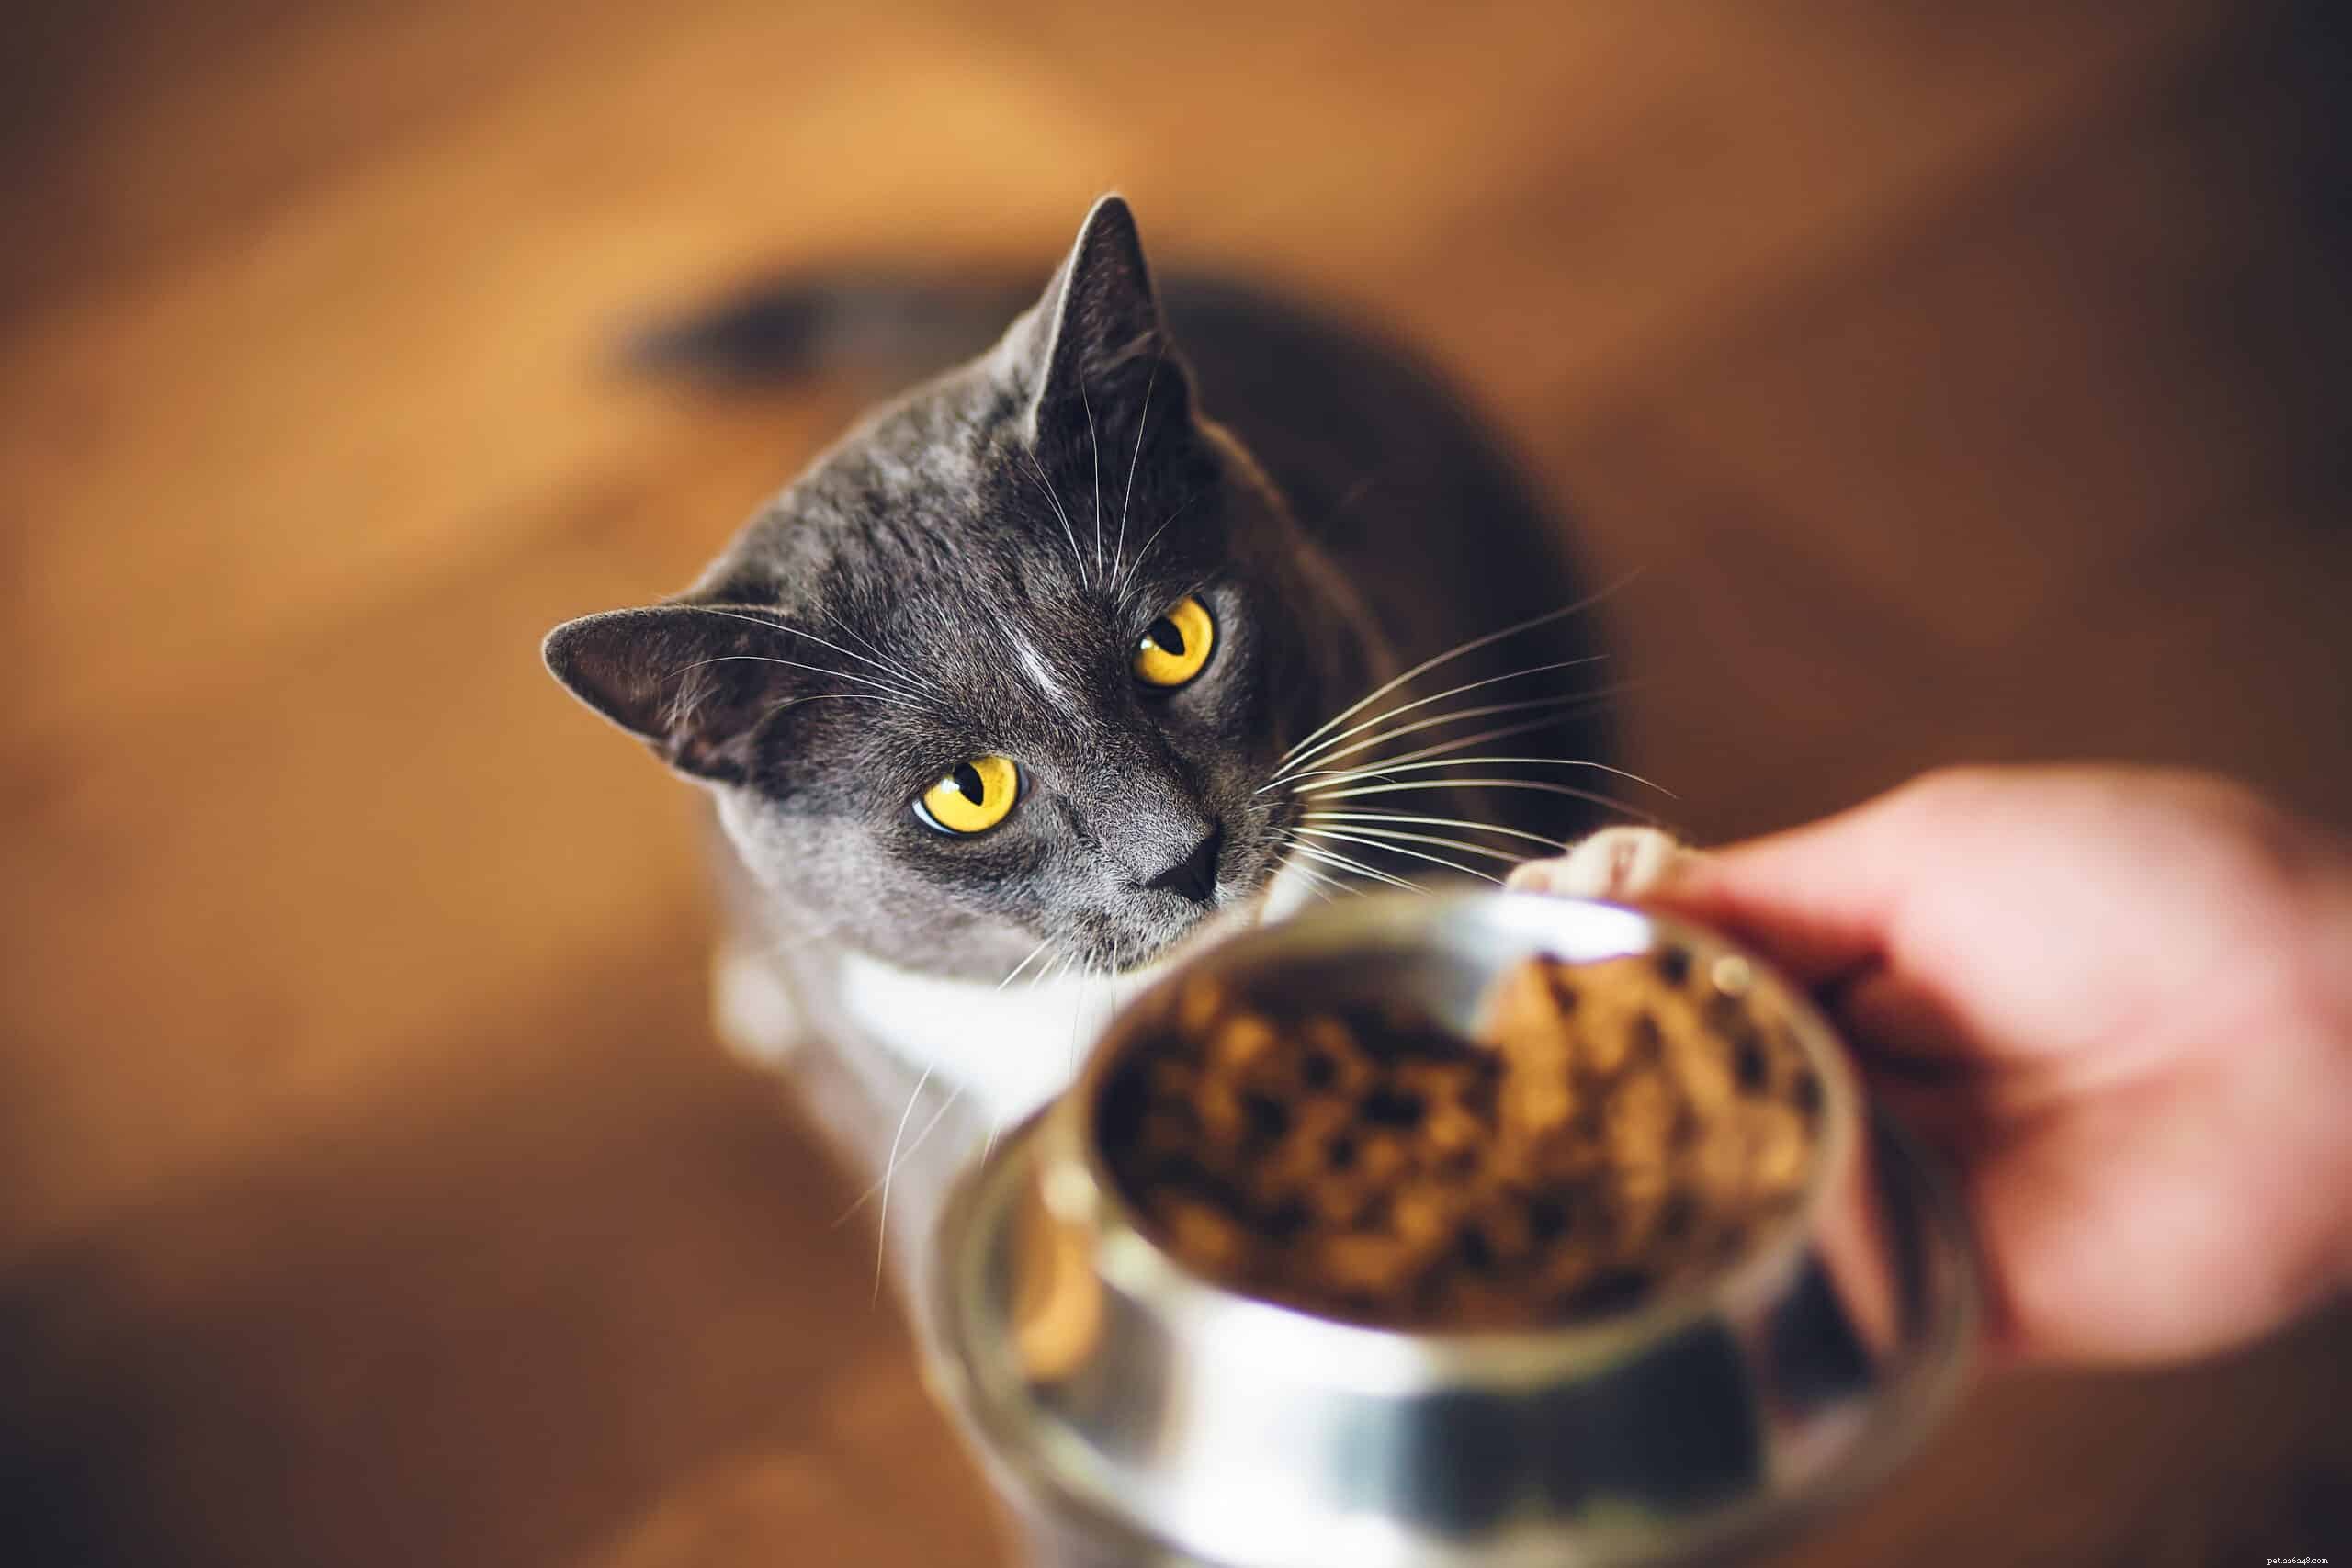 Studie bekräftar att katter inte har något intresse av att arbeta för mat